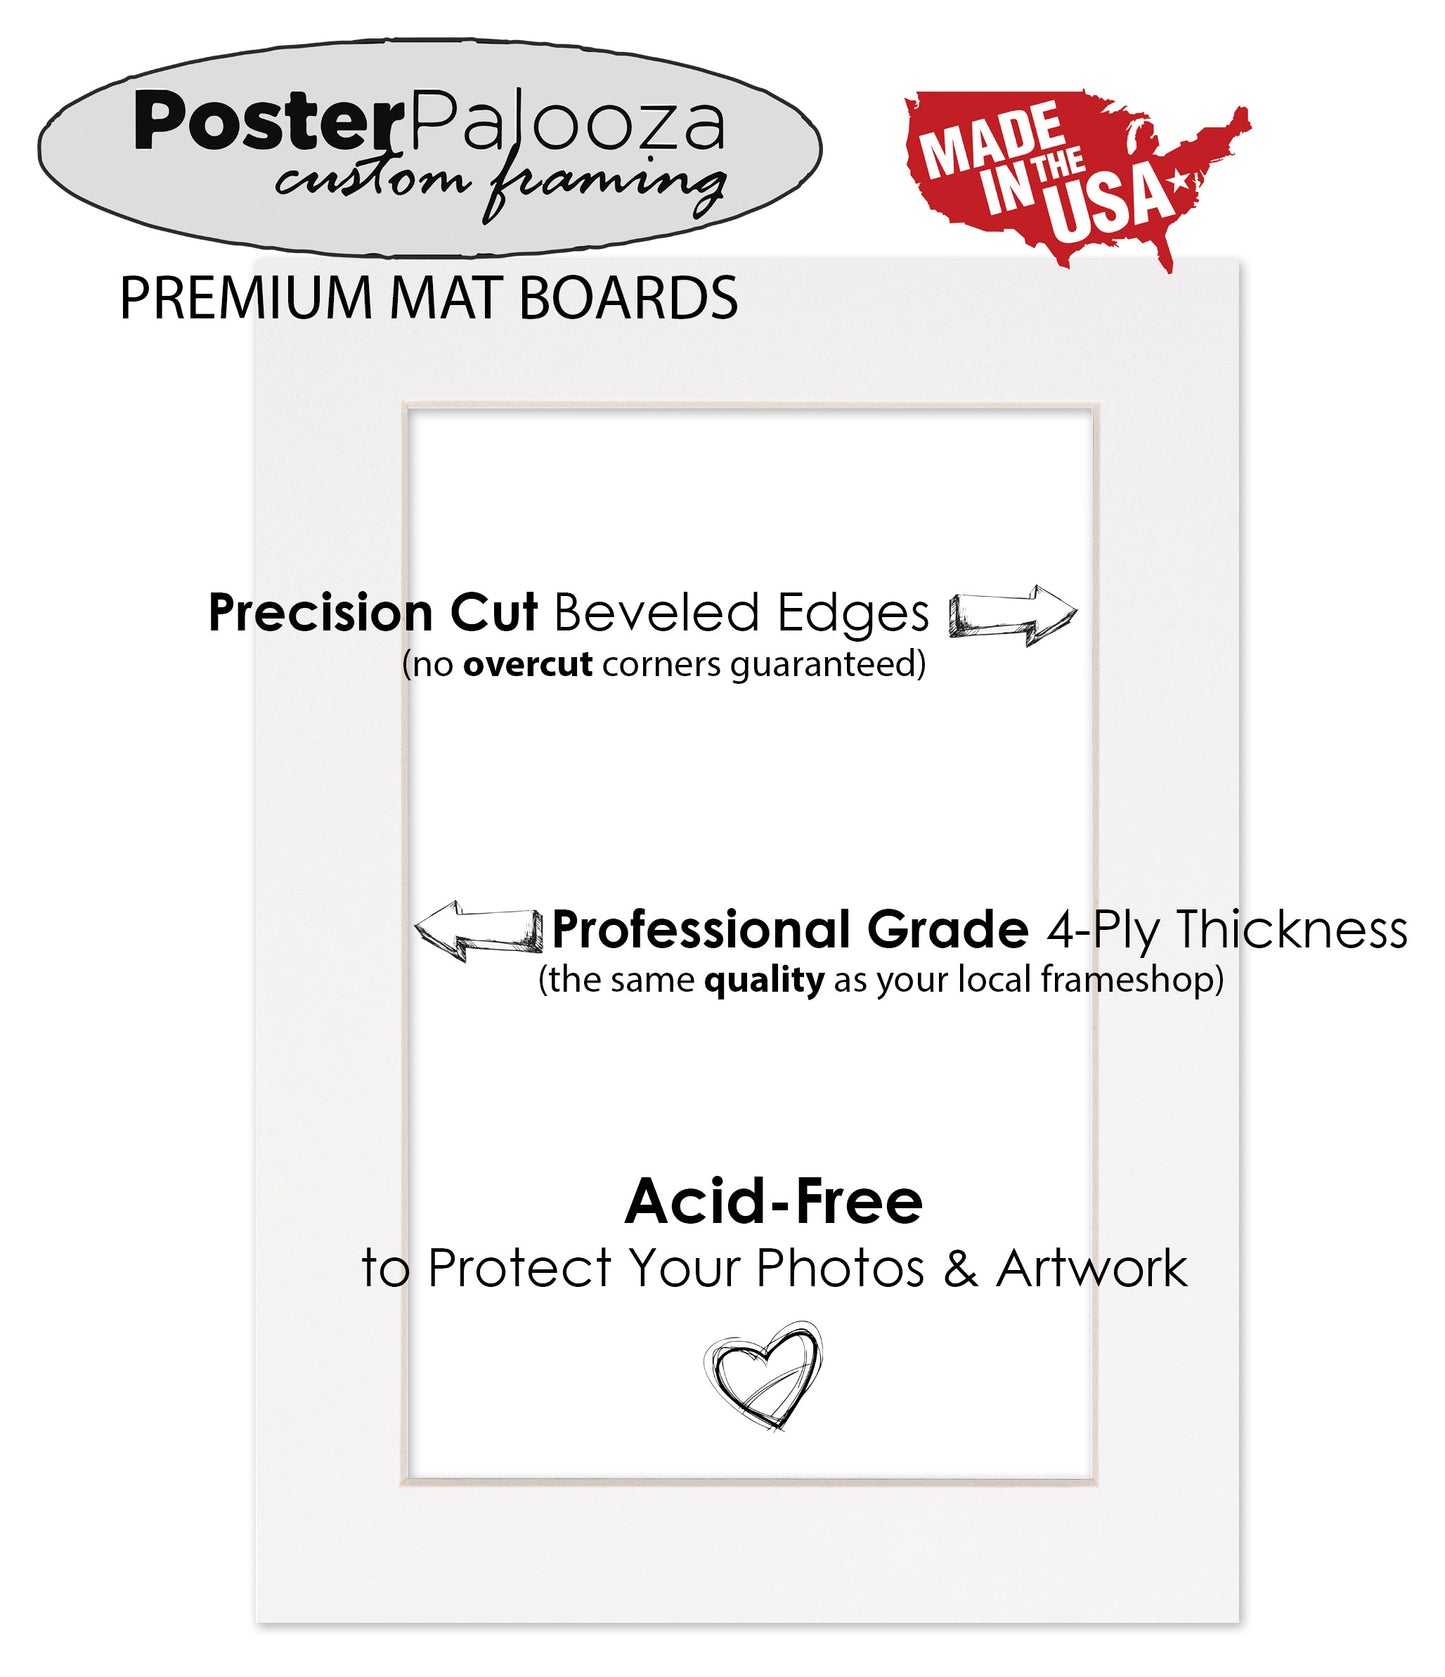 Pack of 25 Textured Cream Precut Acid-Free Matboards